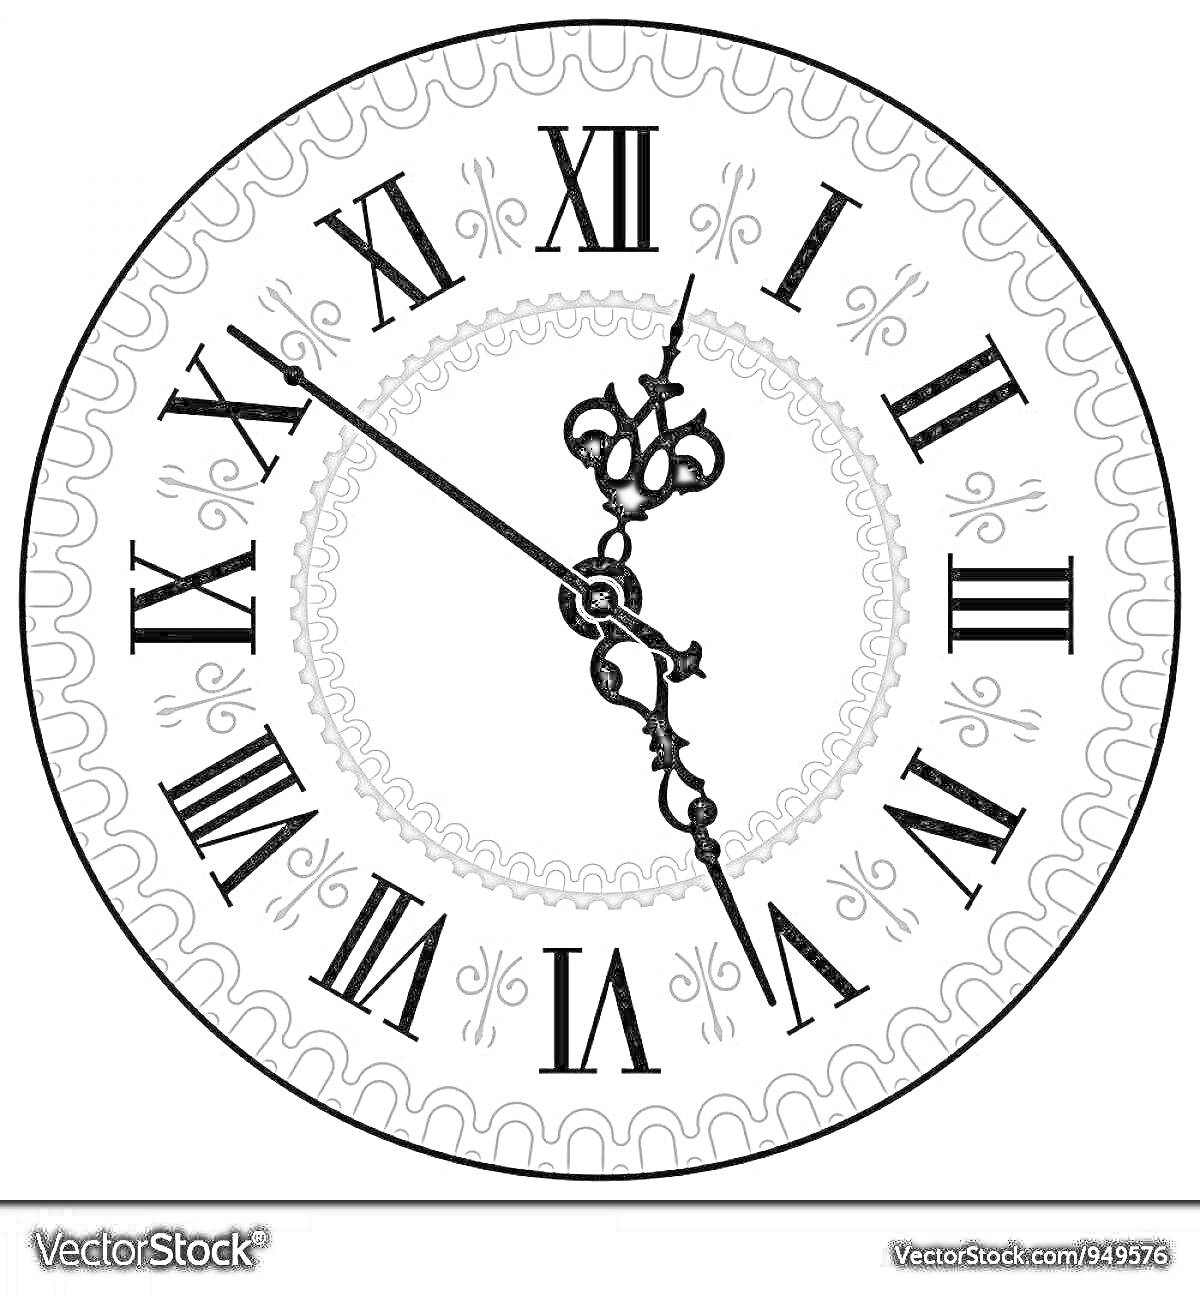 На раскраске изображено: Часы, Циферблат, Римские цифры, Время, Стрелки, Декоративная рамка